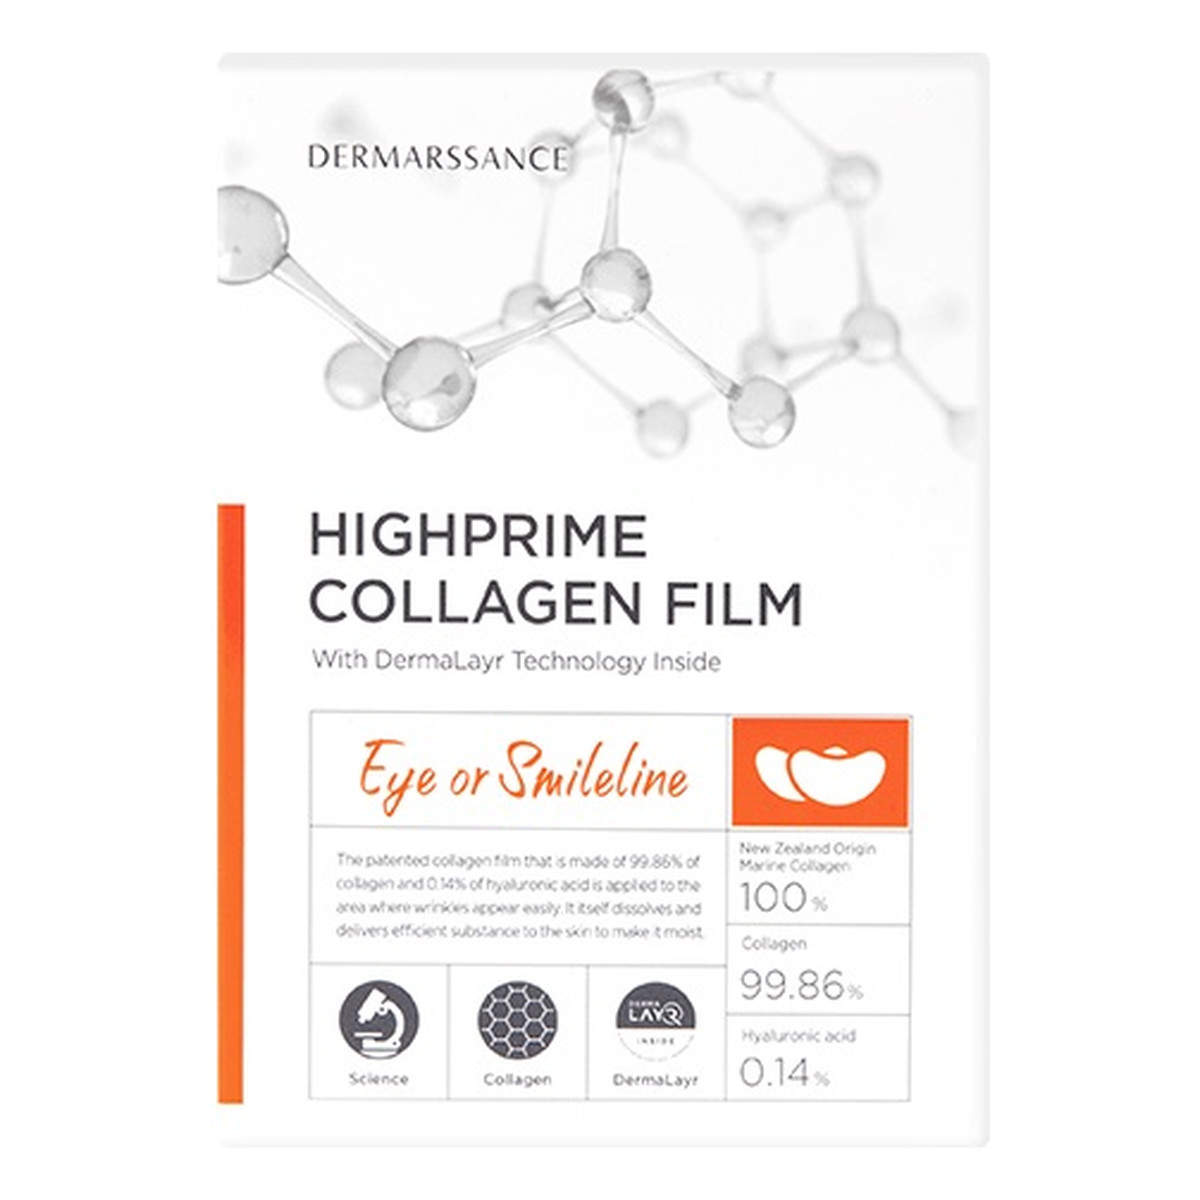 Dermarssance Highprime collagen film eye or smileline płatki pod oczy lub bruzdy nosowe 5szt.